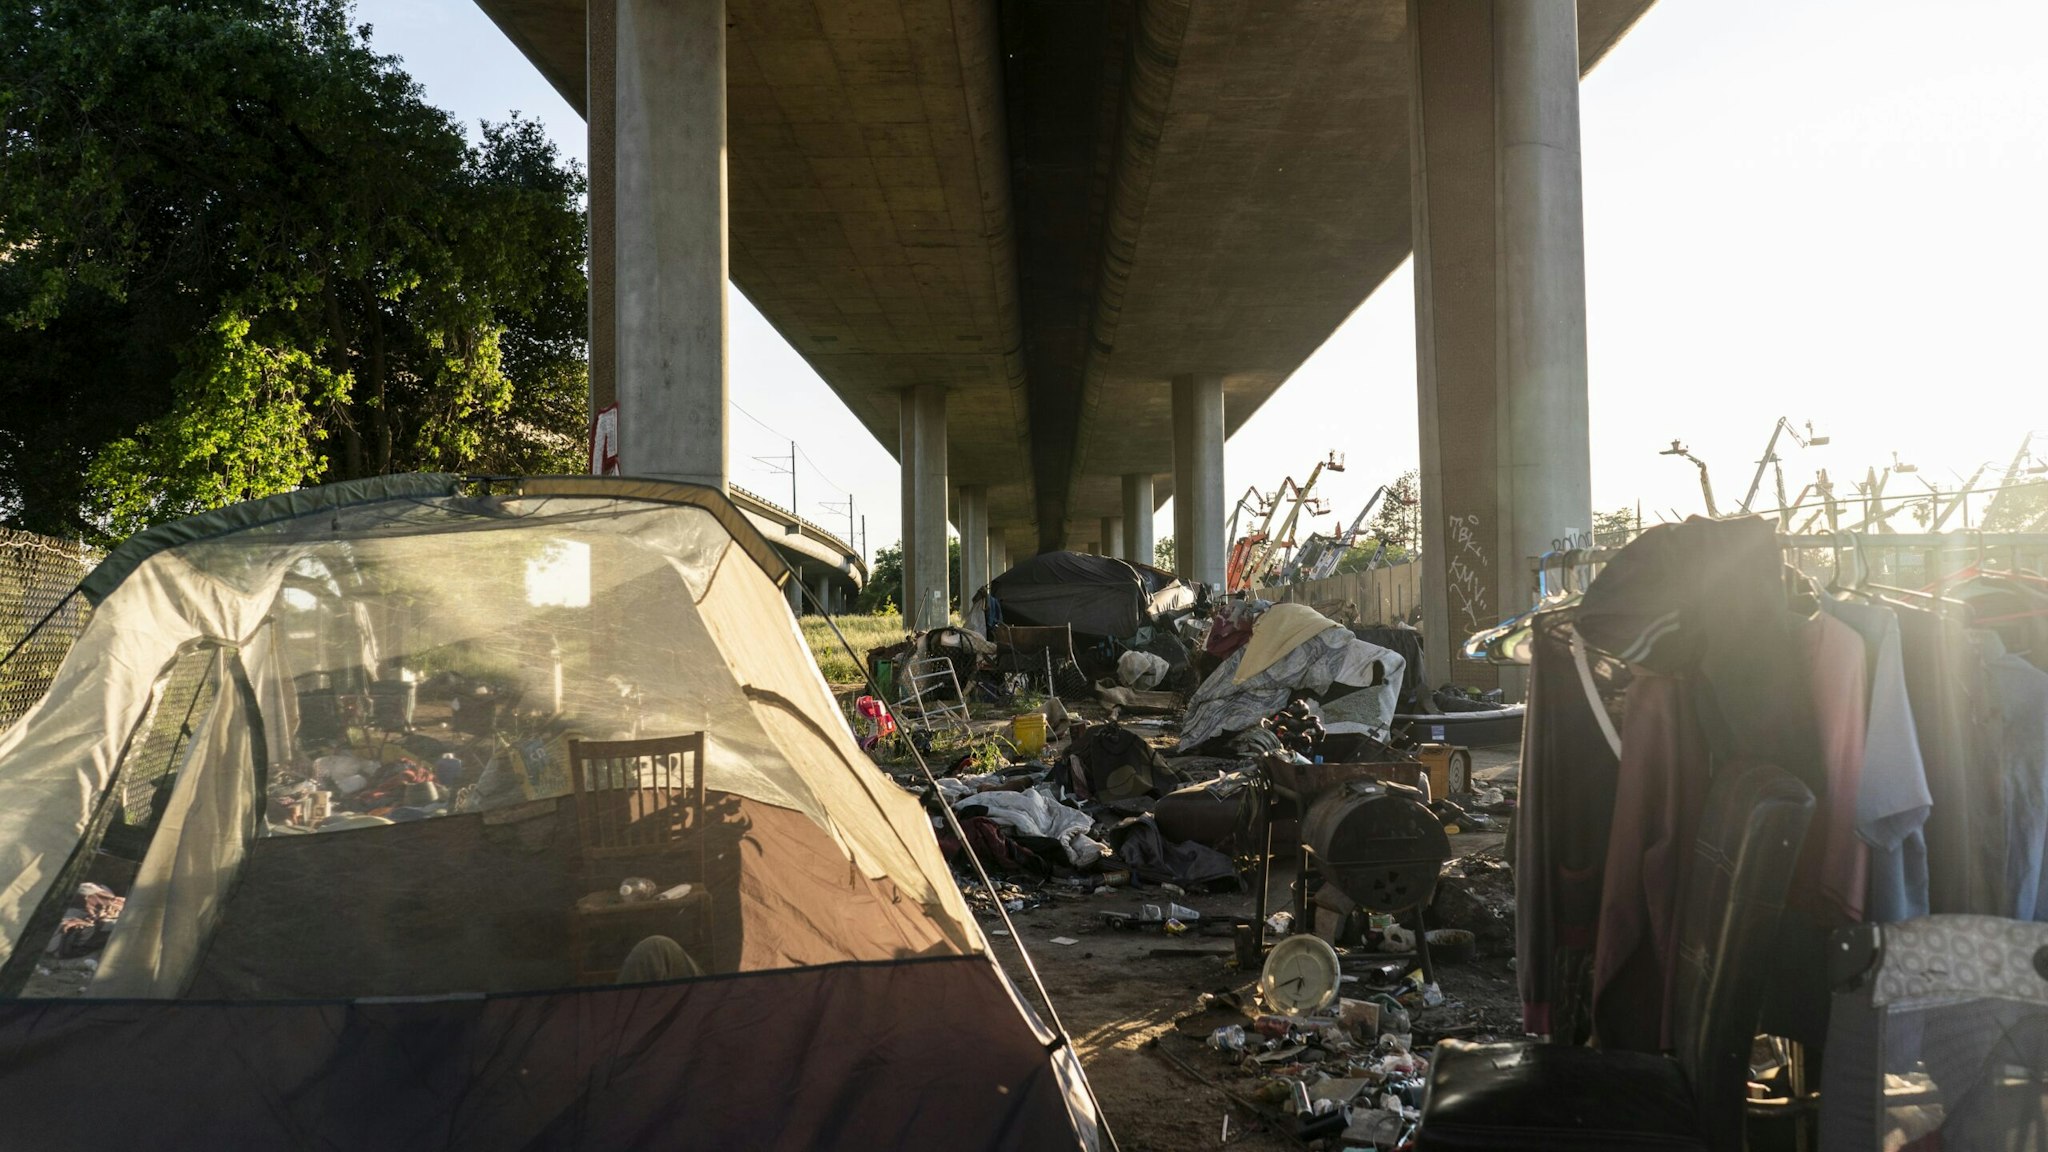 Sacramento Homeless